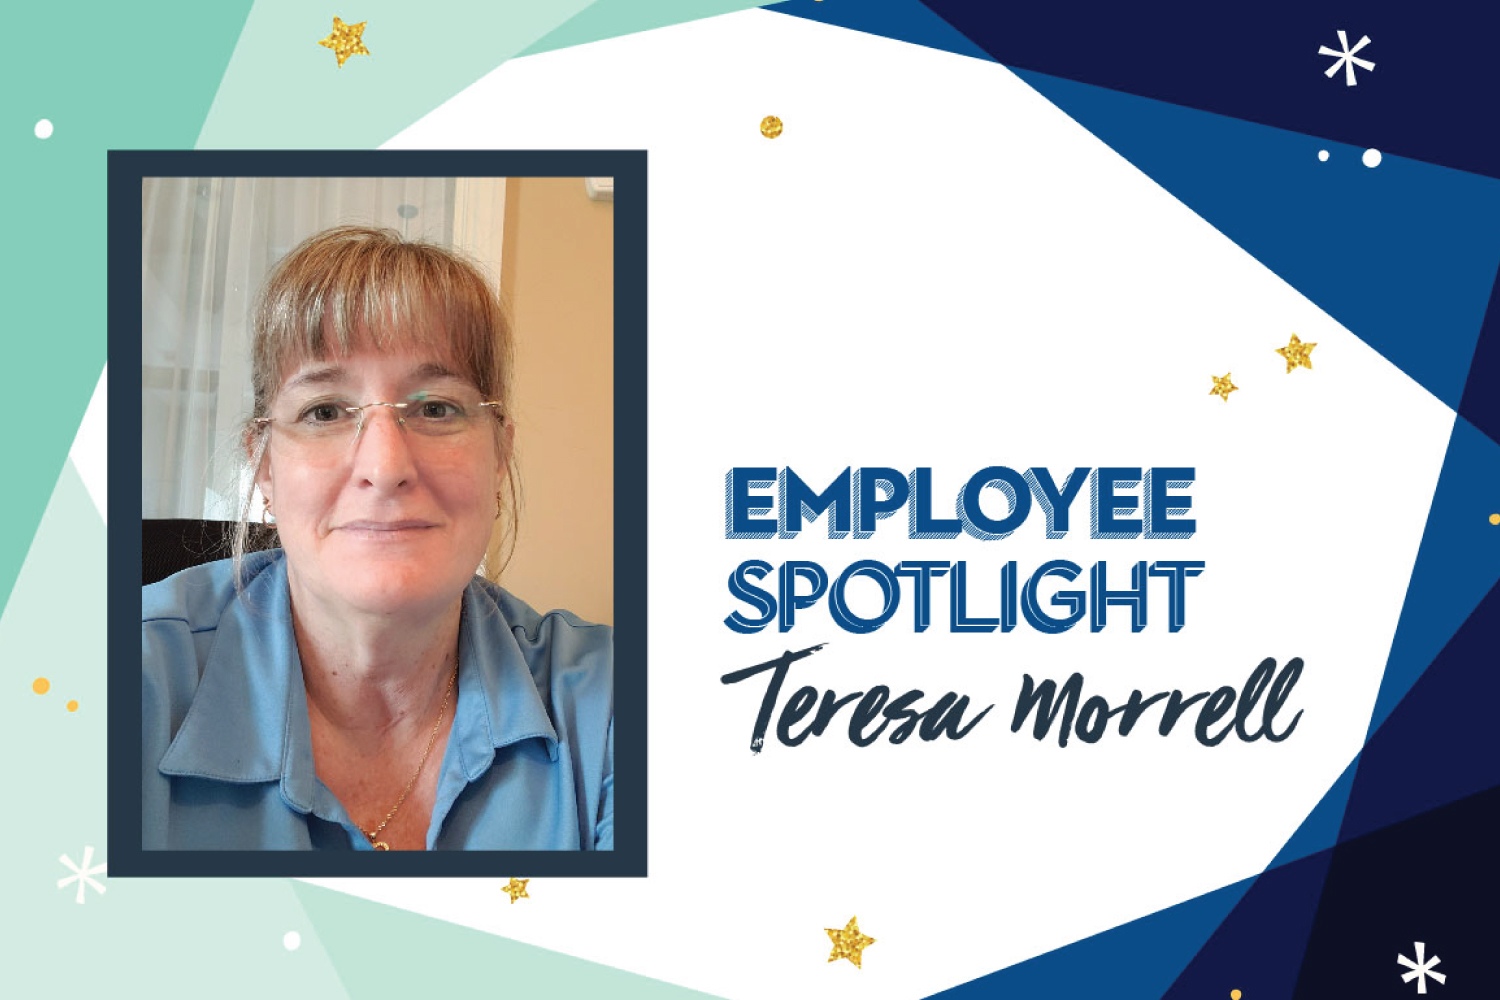 Employee Spotlight: Teresa Morrell